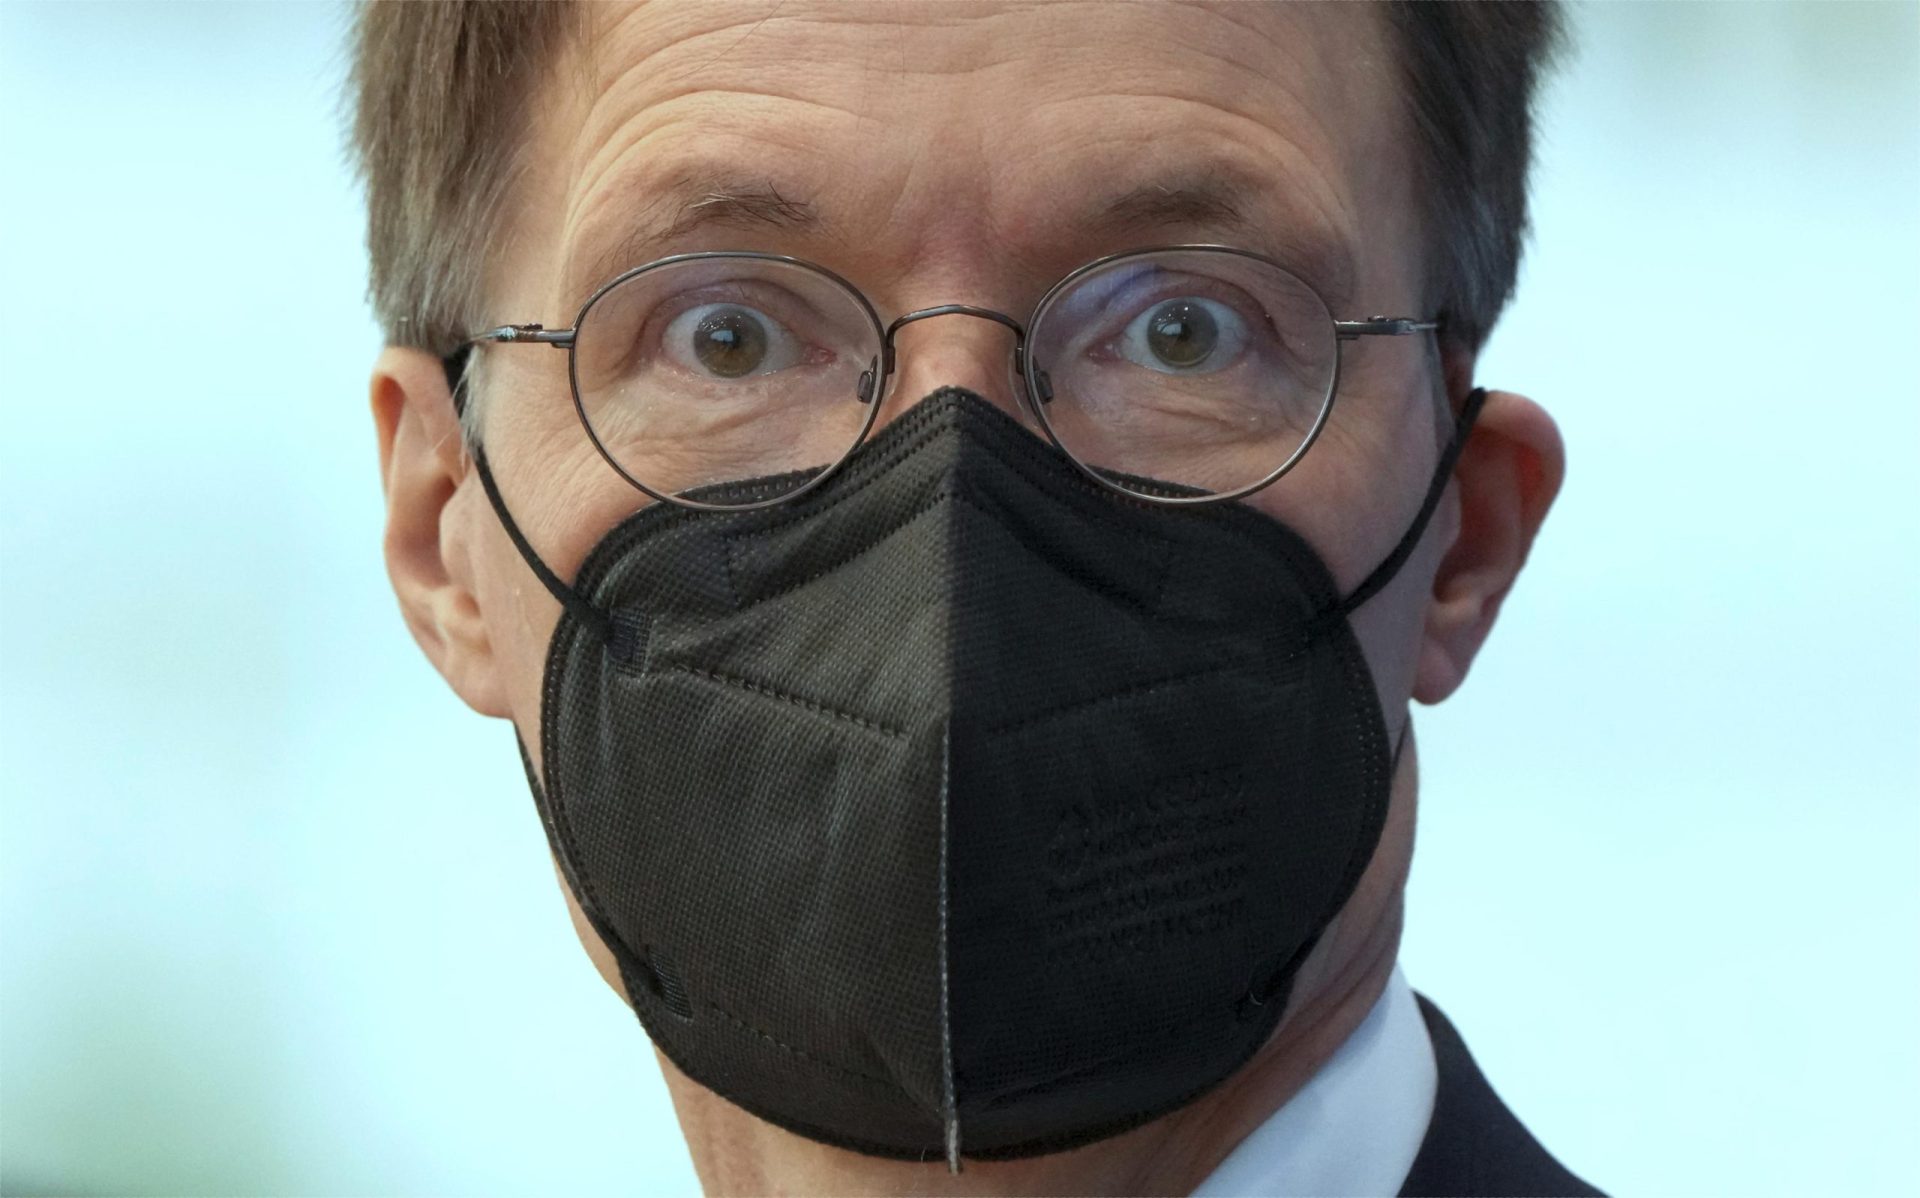 Alemania planea dejar de exigir el uso de máscaras en los aviones